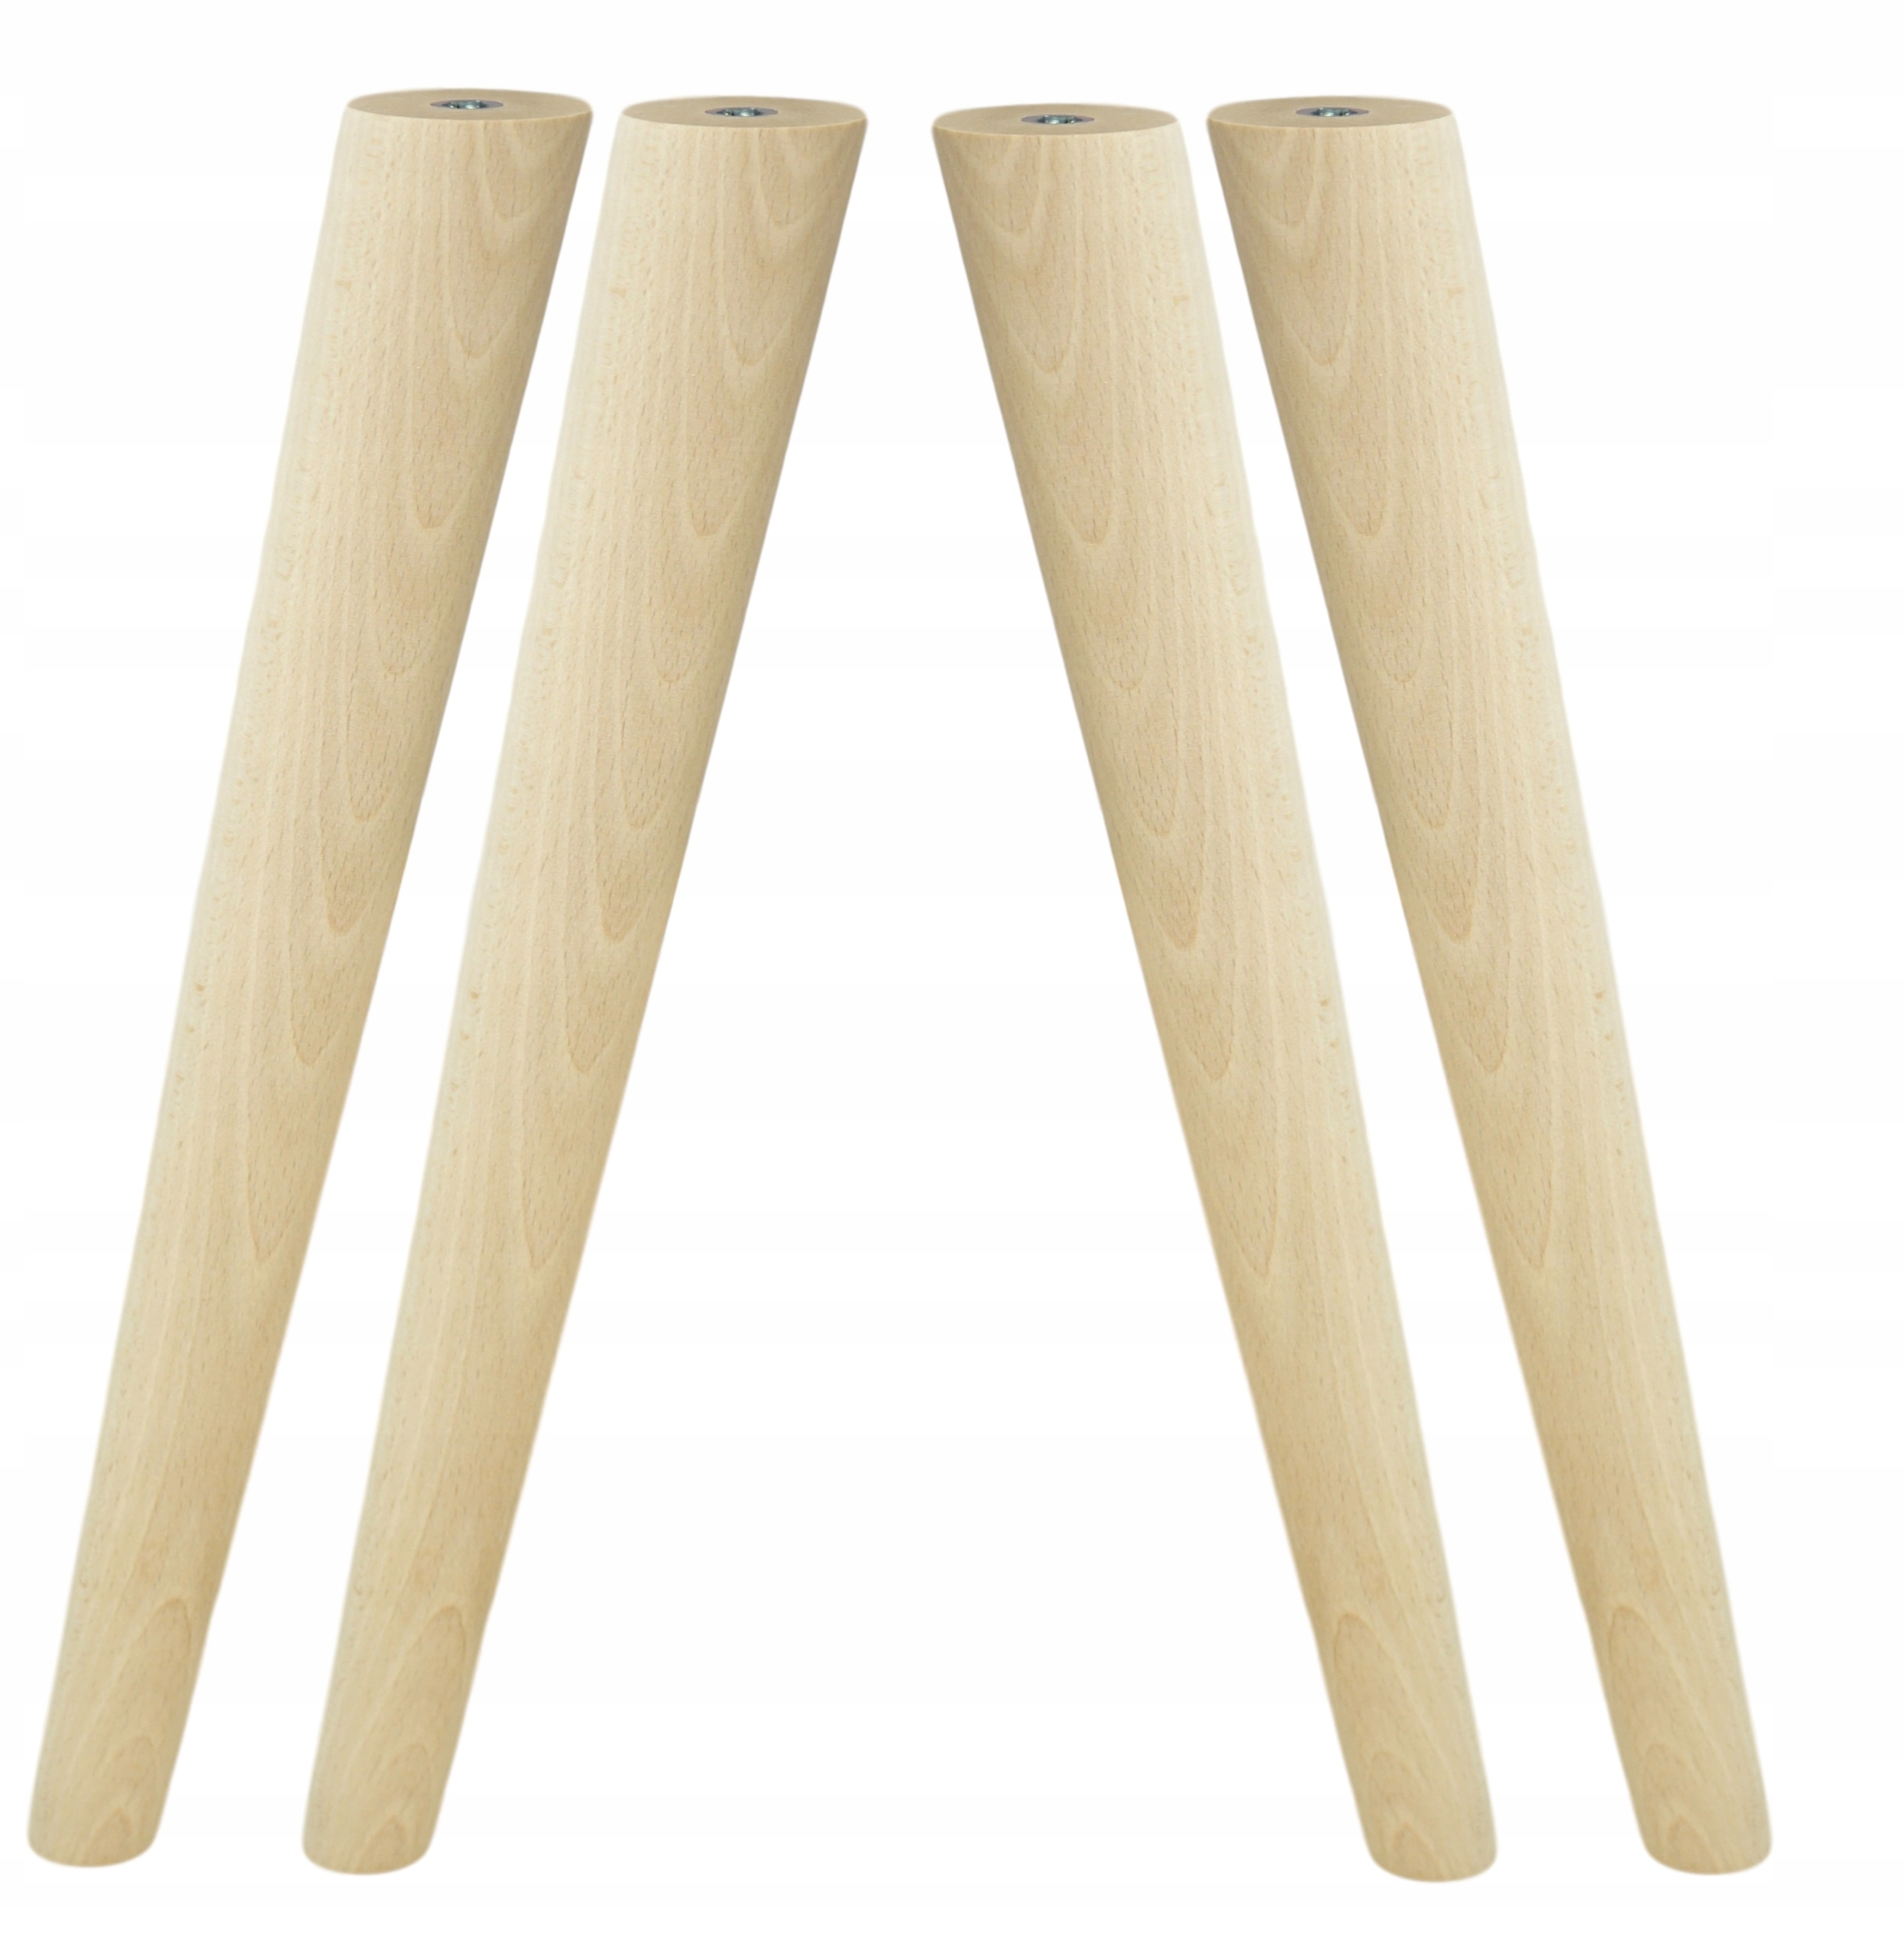 ХИЛВЕР ножка коническая, бамбук, 70 см